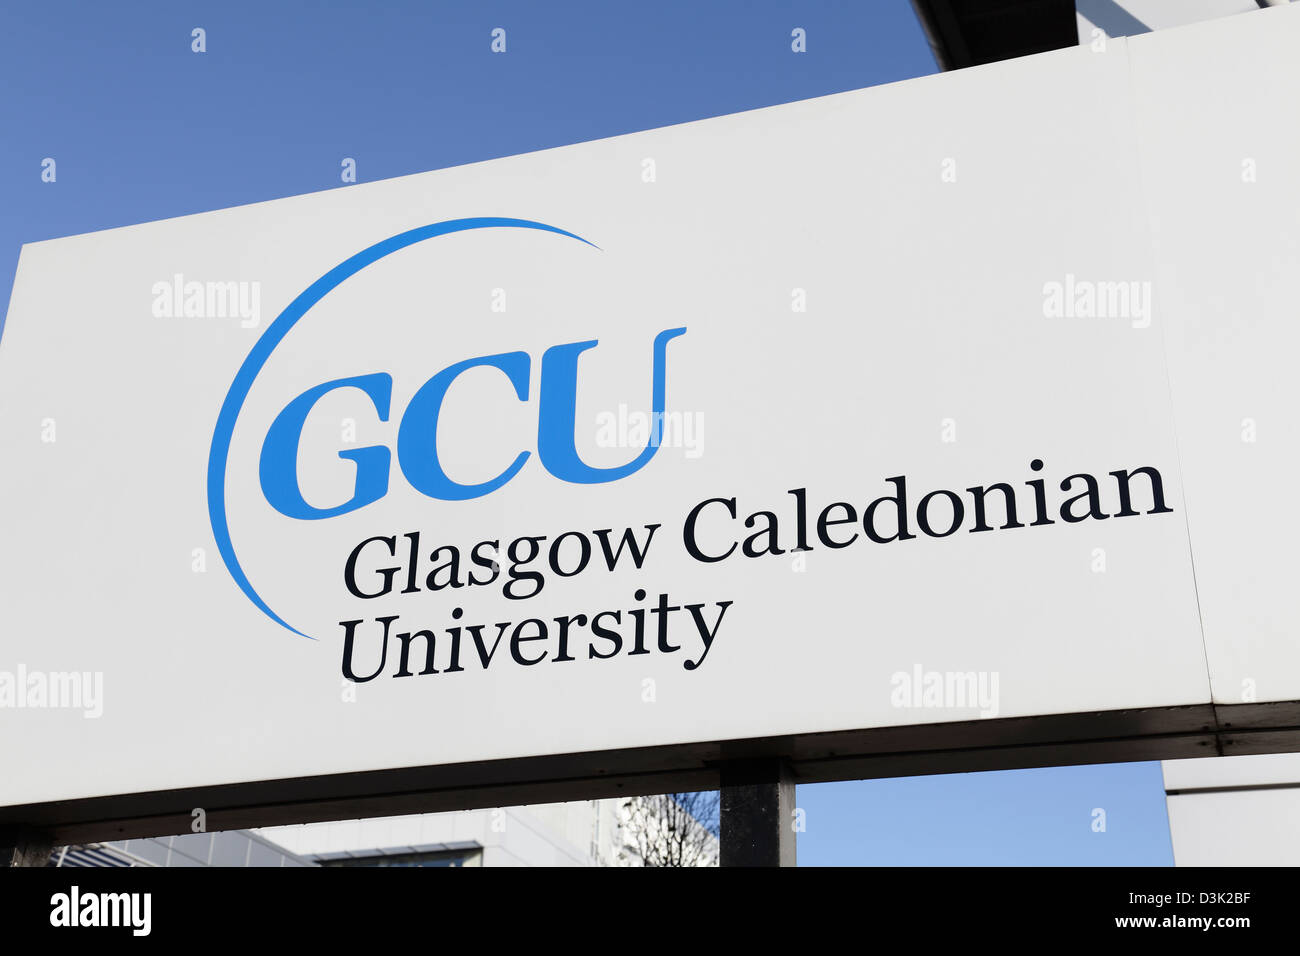 Glasgow Caledonian University sign, Scotland, UK Stock Photo